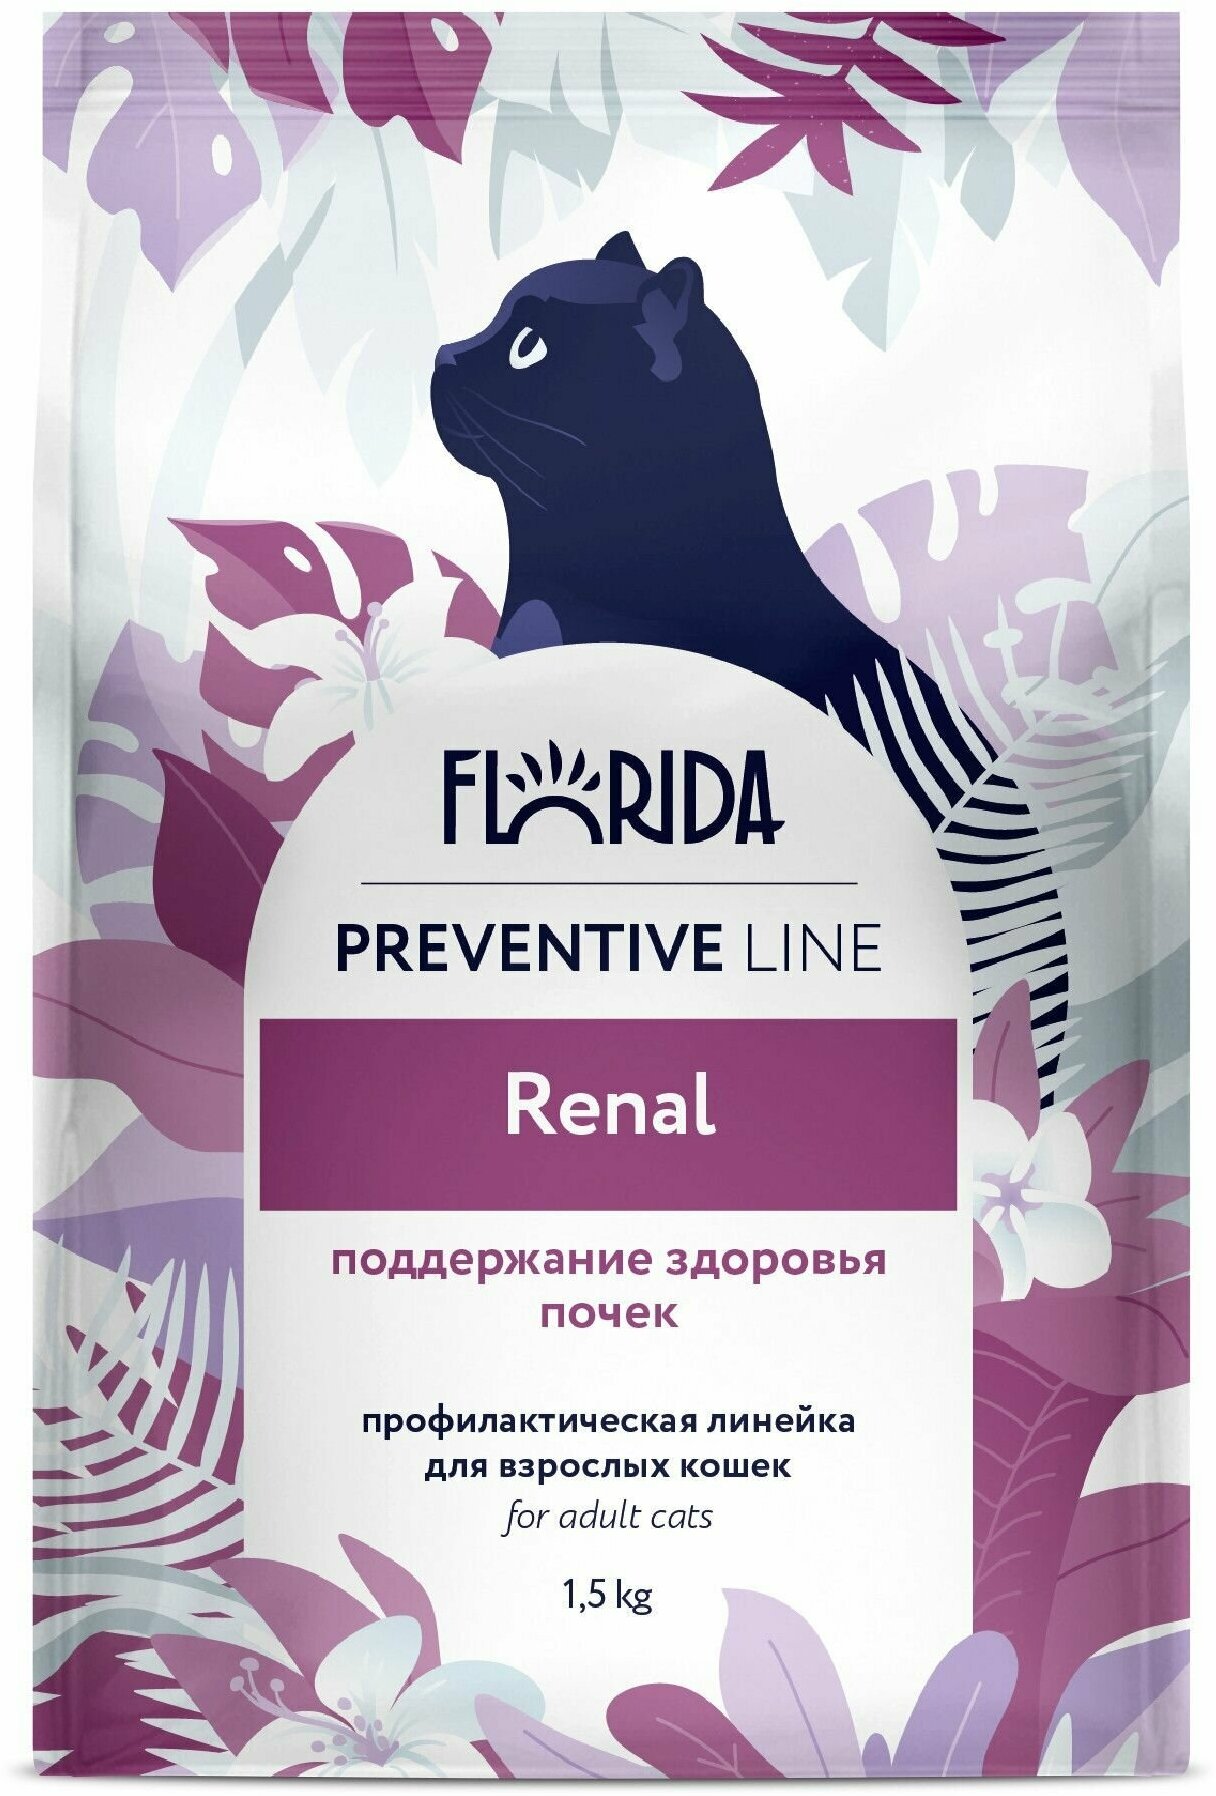 Сухой корм FLORIDA для кошек профилактическая линия Preventive Line renal поддержание здоровья почек с курицей и фитокомпозицией 15 кг.